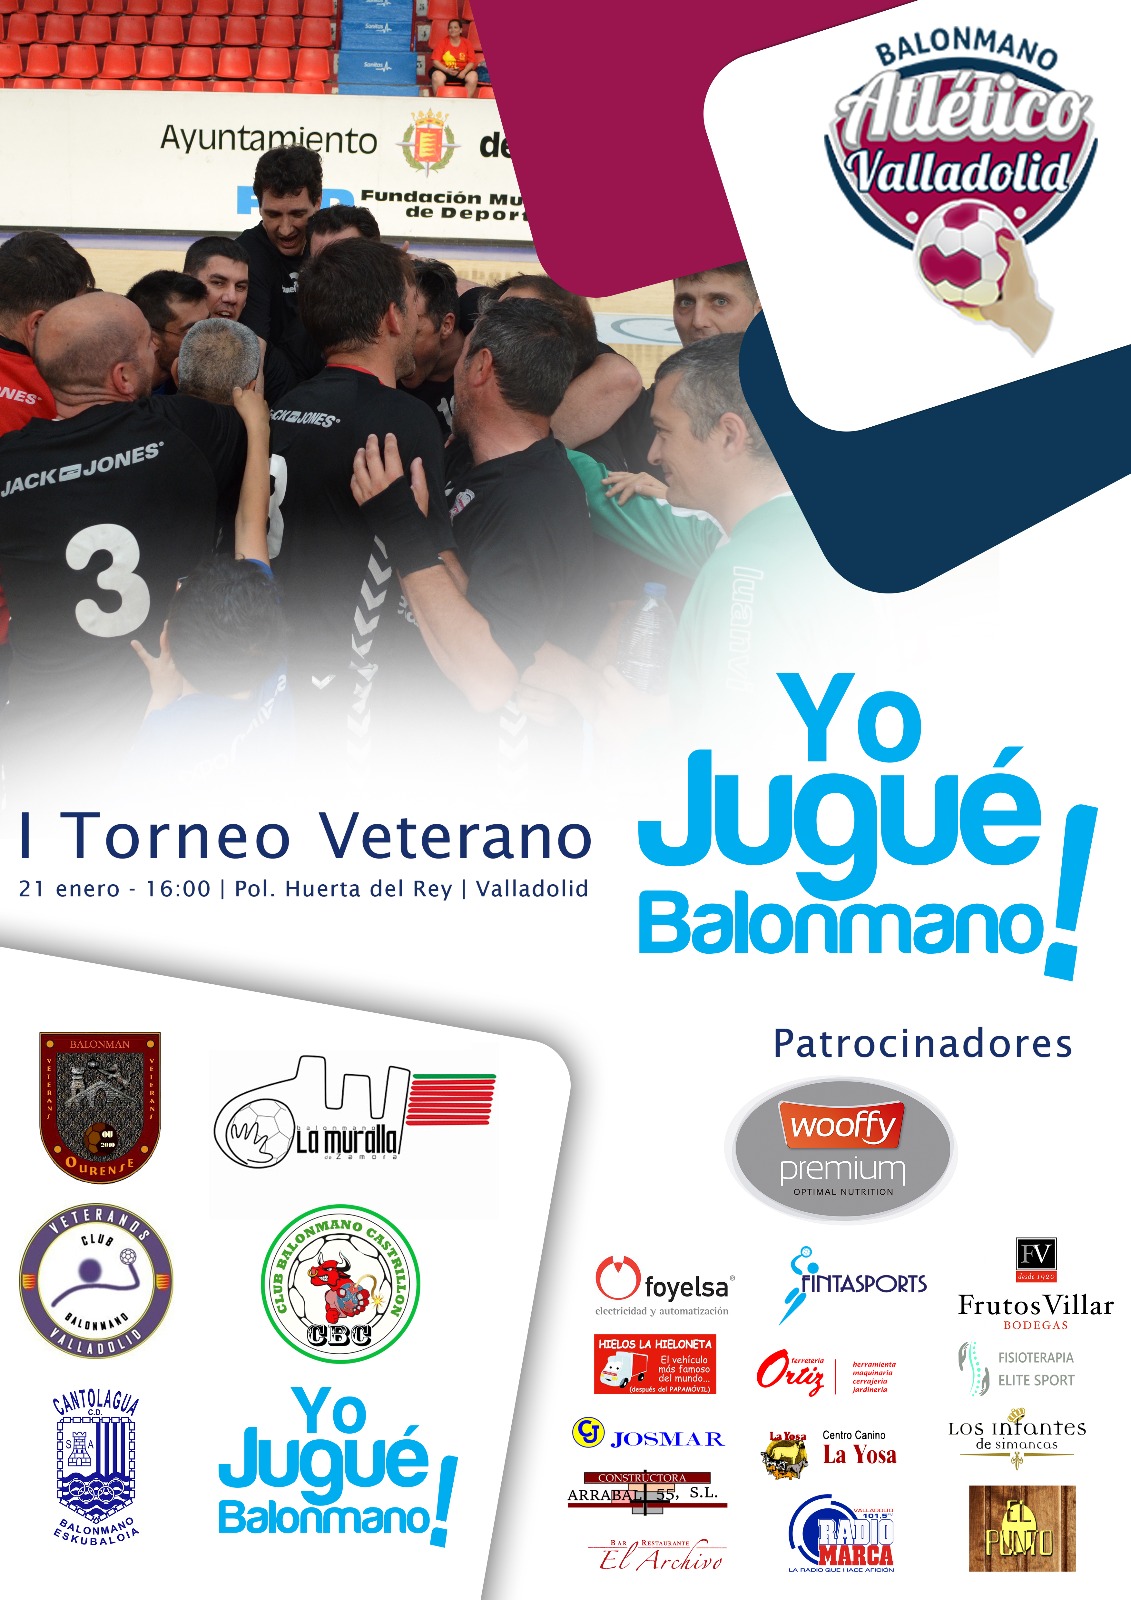 El Recoletas Atlético Valladolid acoge este sábado su primer torneo de veteranos | Galería 1 / 1